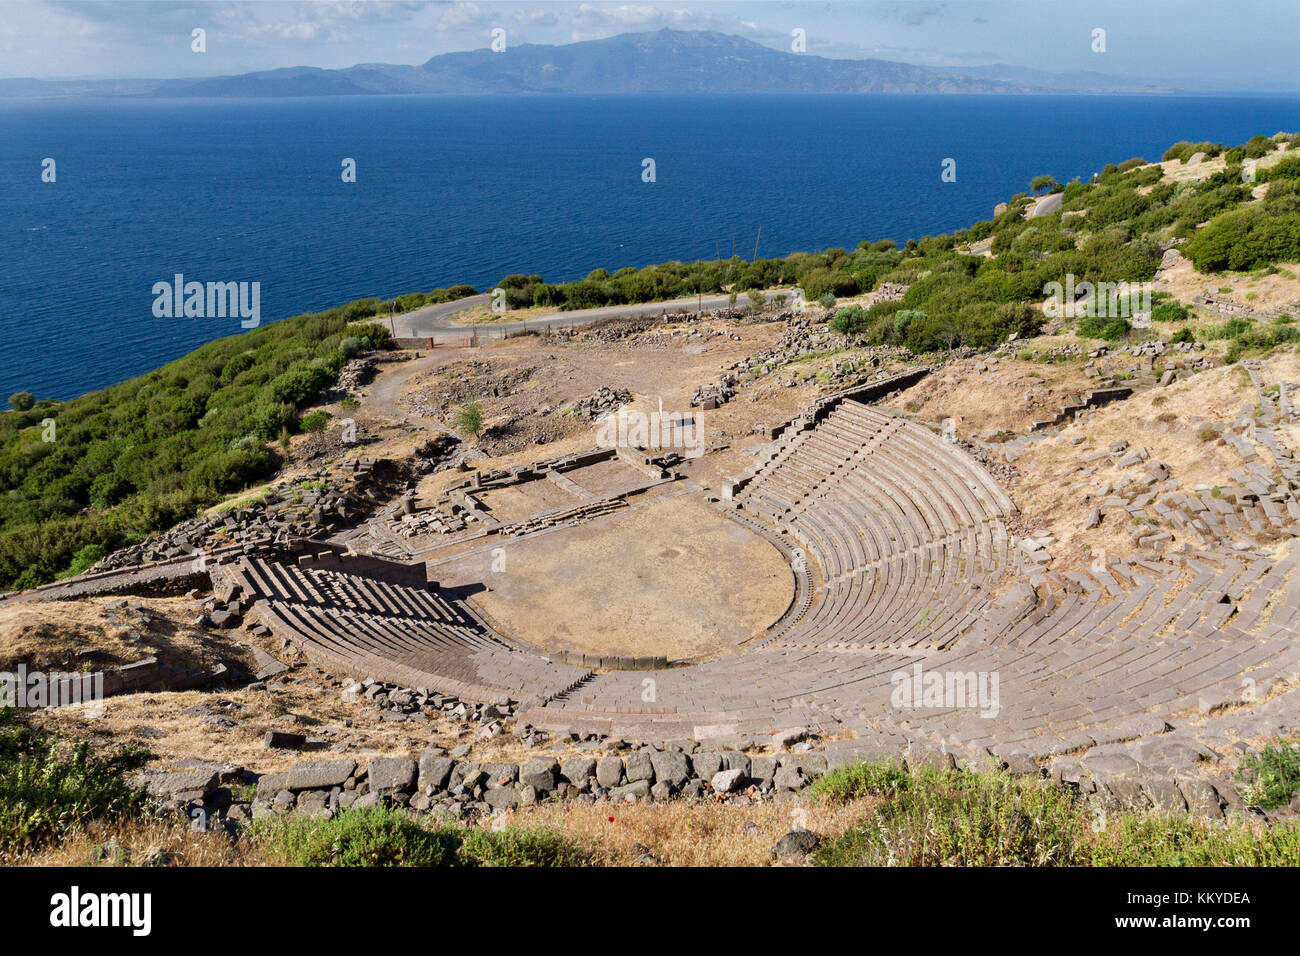 Théâtre Antique dans les ruines d'Assos en Turquie et l'île grecque de Lesbos, sur l'arrière-plan. Banque D'Images